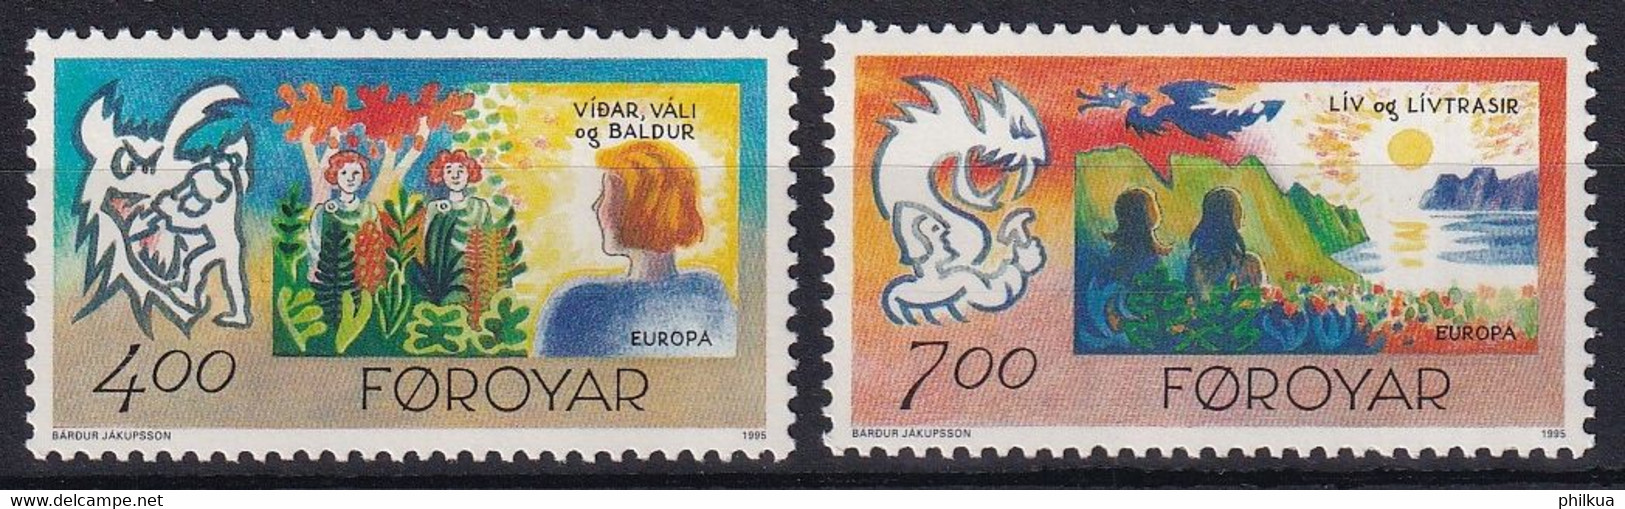 MiNr. 278 - 279 Dänemark Färöer 1995, 10. April. Europa: Frieden Und Freiheit  Postfrisch/**/MNH - Färöer Inseln